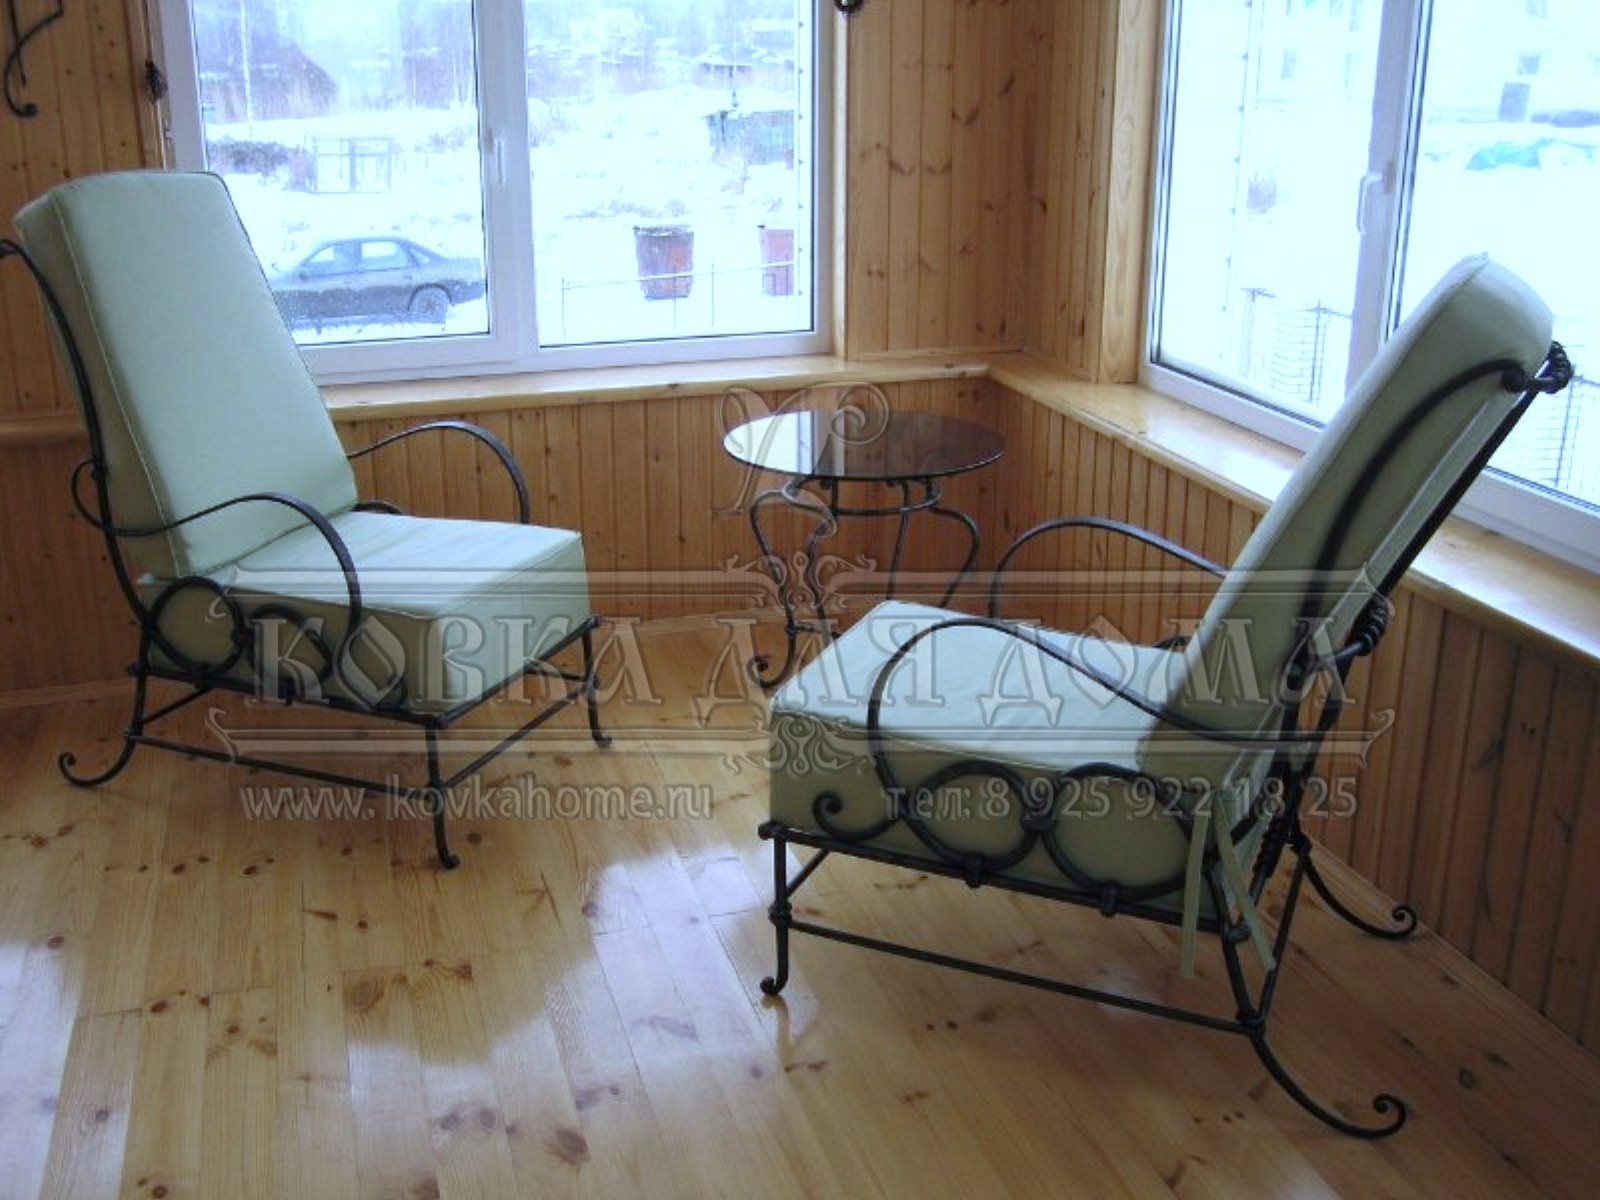 Кованые кресла удобные с кованым столиком на террасу или в гостиную с мягкой сидушкой и спинкой.